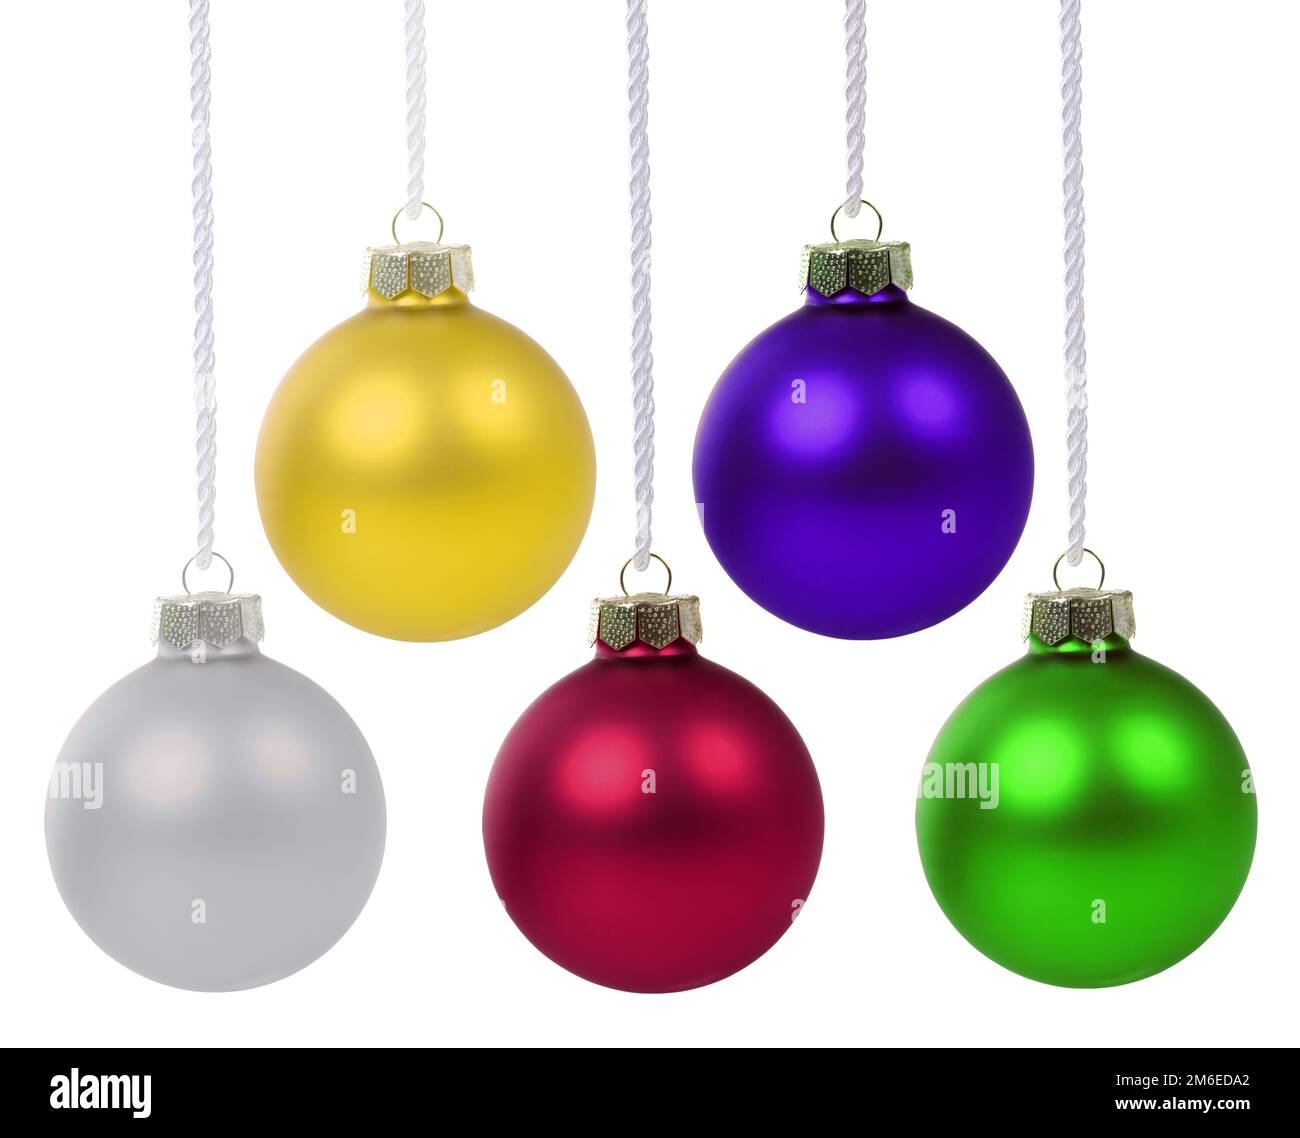 Weihnachtskugeln Weihnacht Kugeln Farben Dekoration Freisteller freigestellt isoliert Banque D'Images